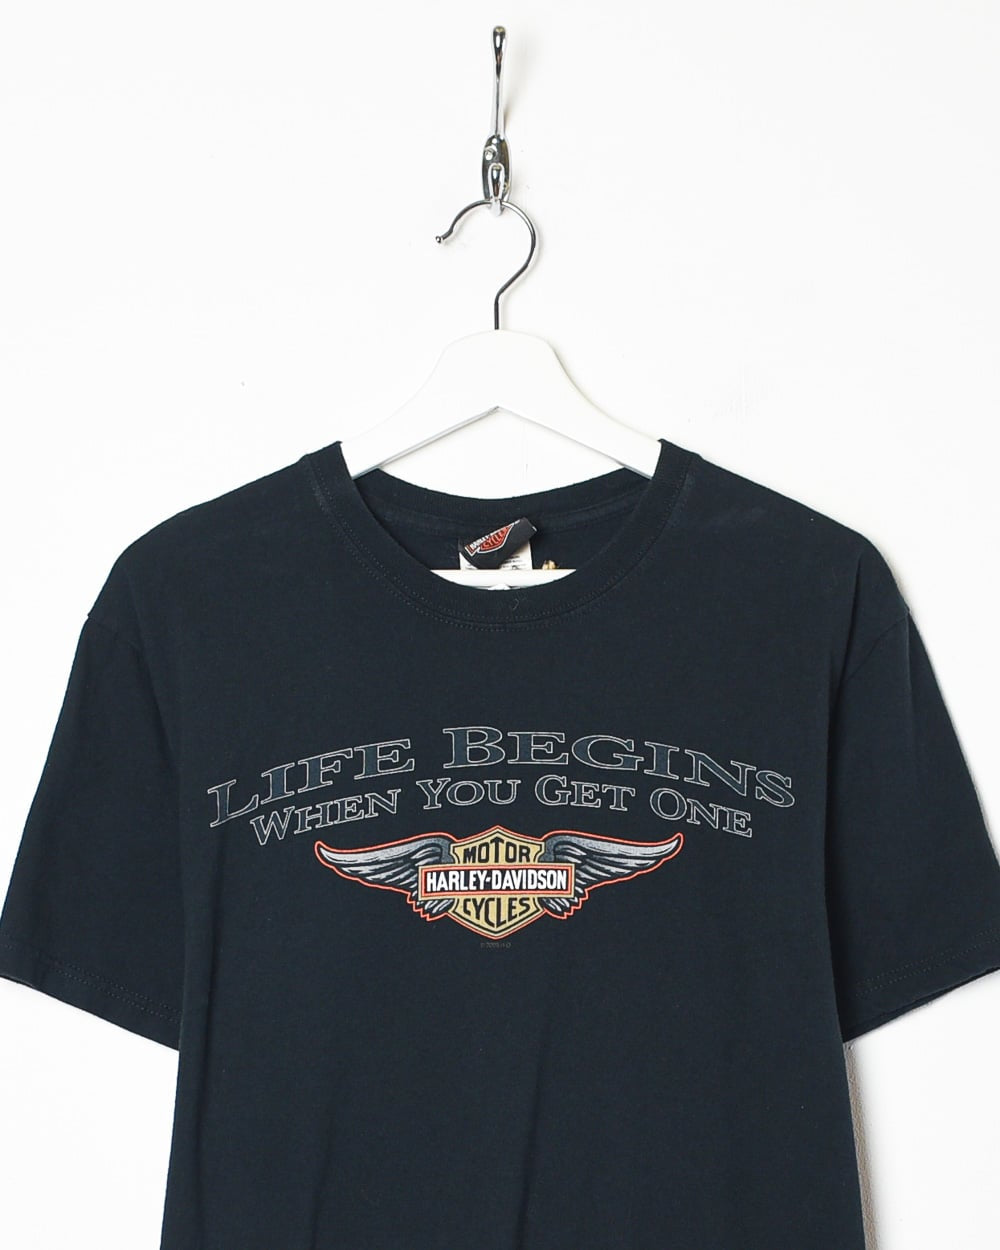 Vintage 00s Black Harley Davidson Life Begins When You Get One T-Shirt -  Medium Cotton – Domno Vintage